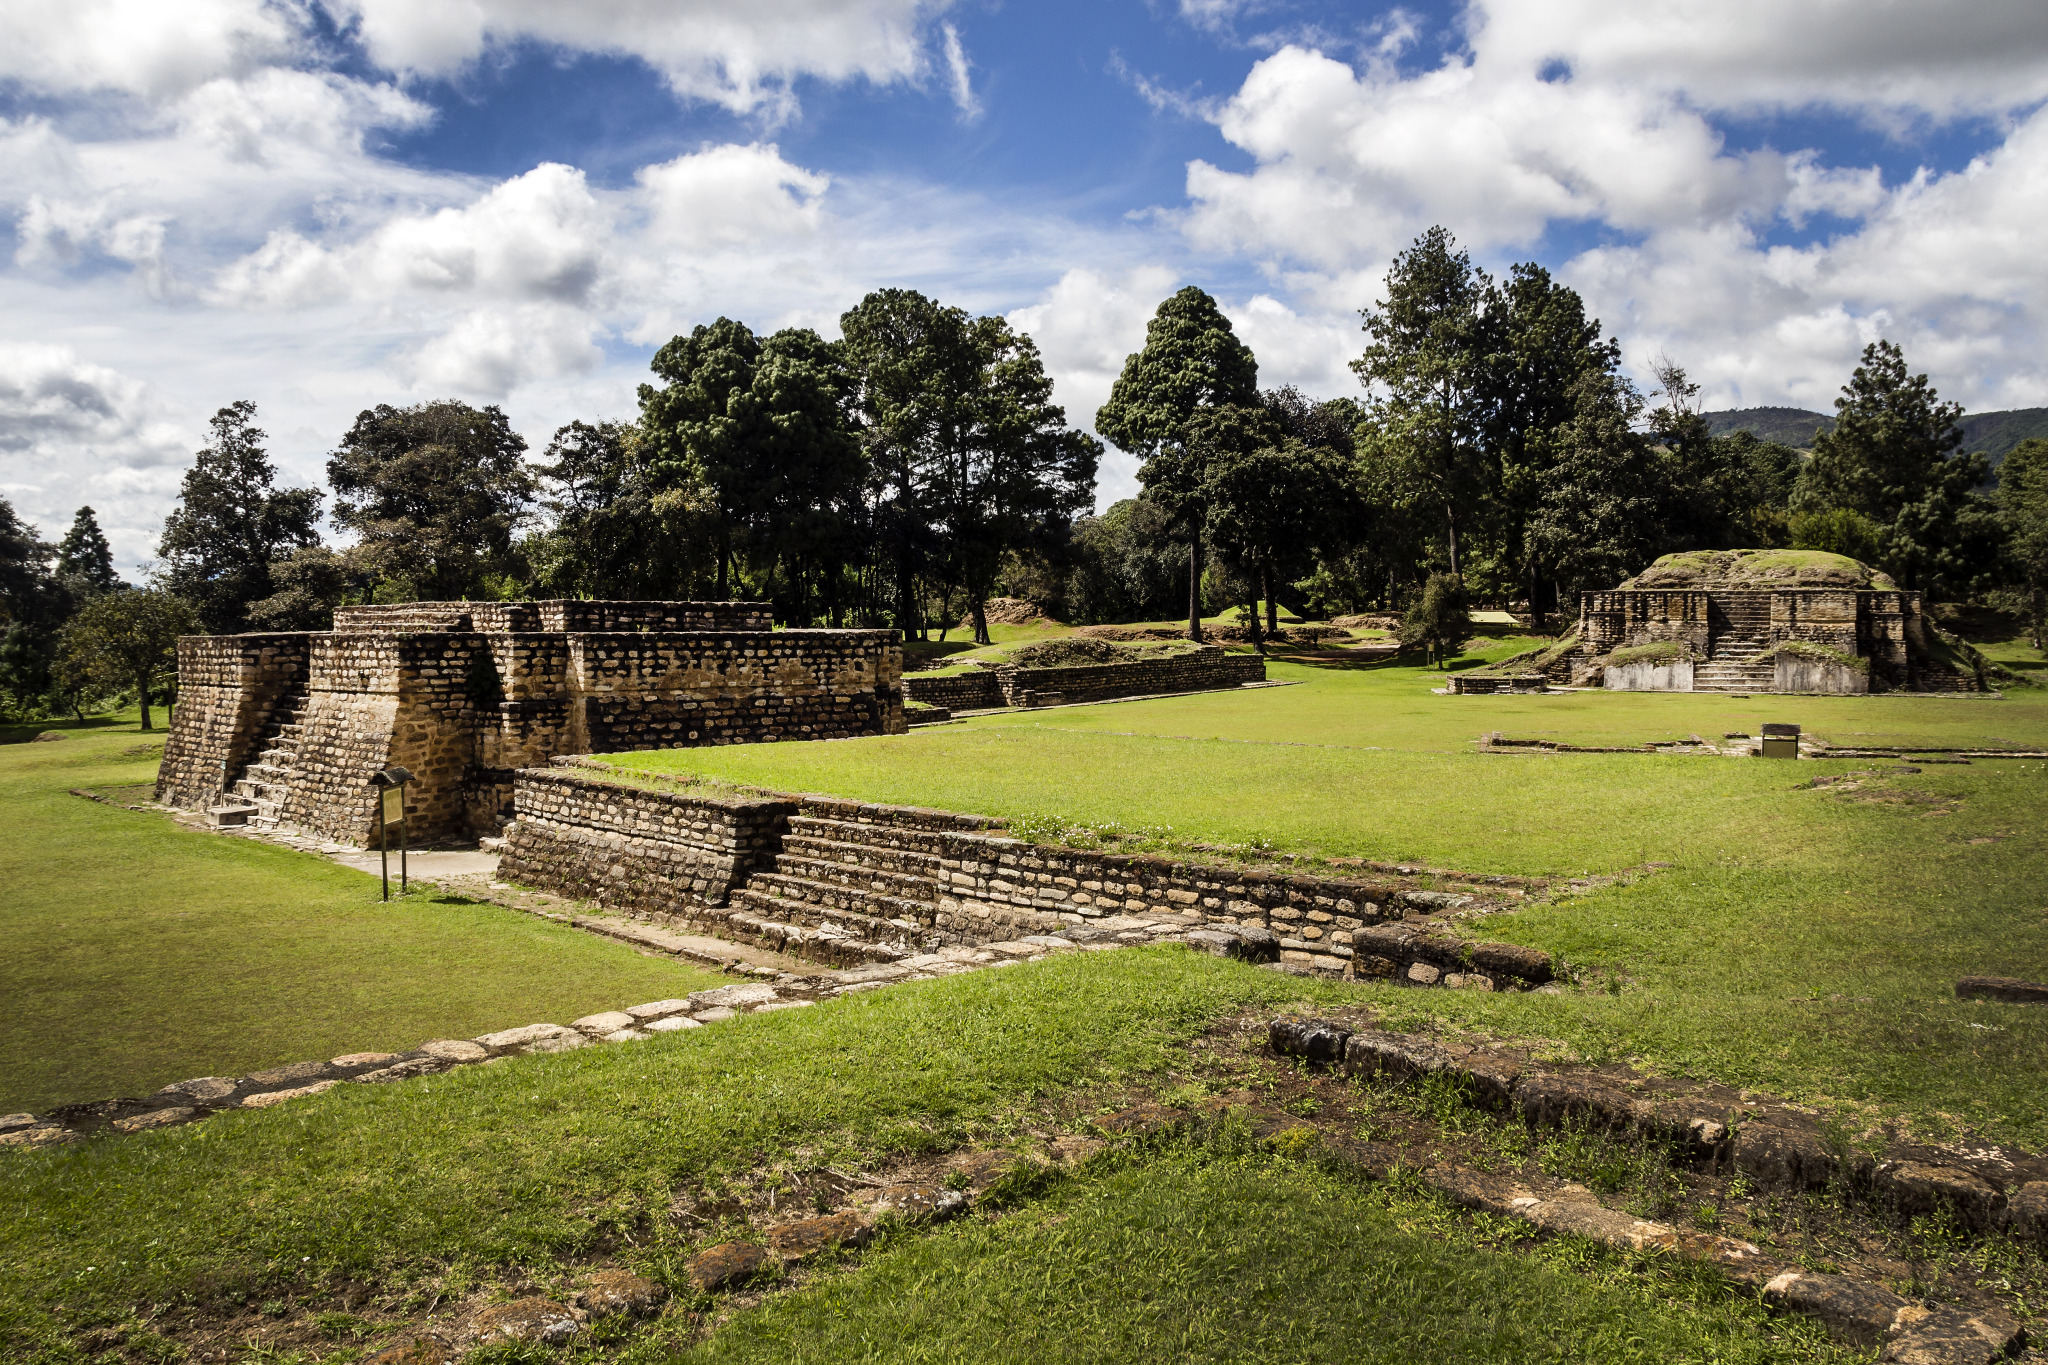 Iximche Mayan ruins in Guatemala